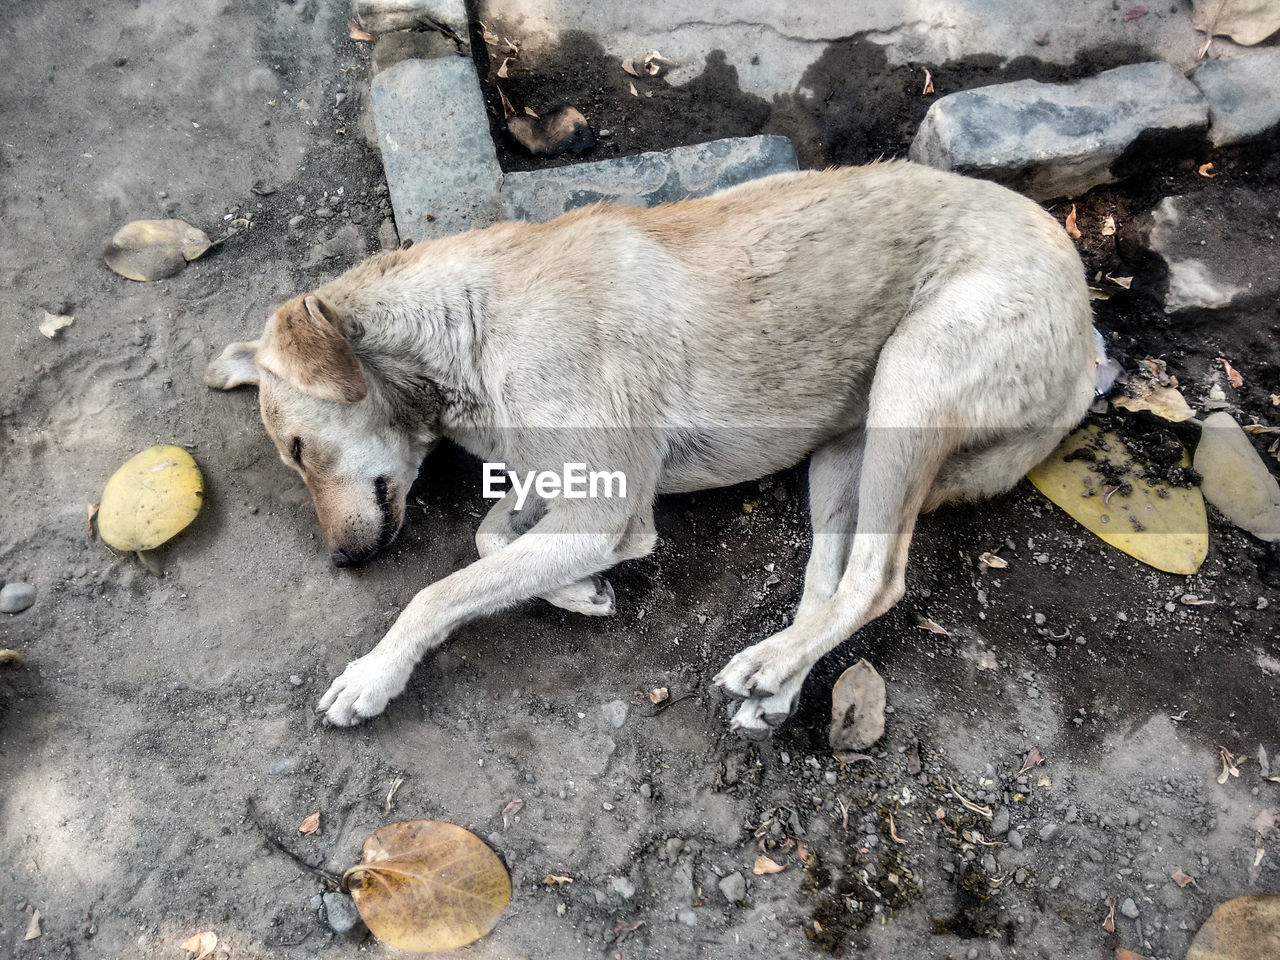 Stray dog sleeping on street